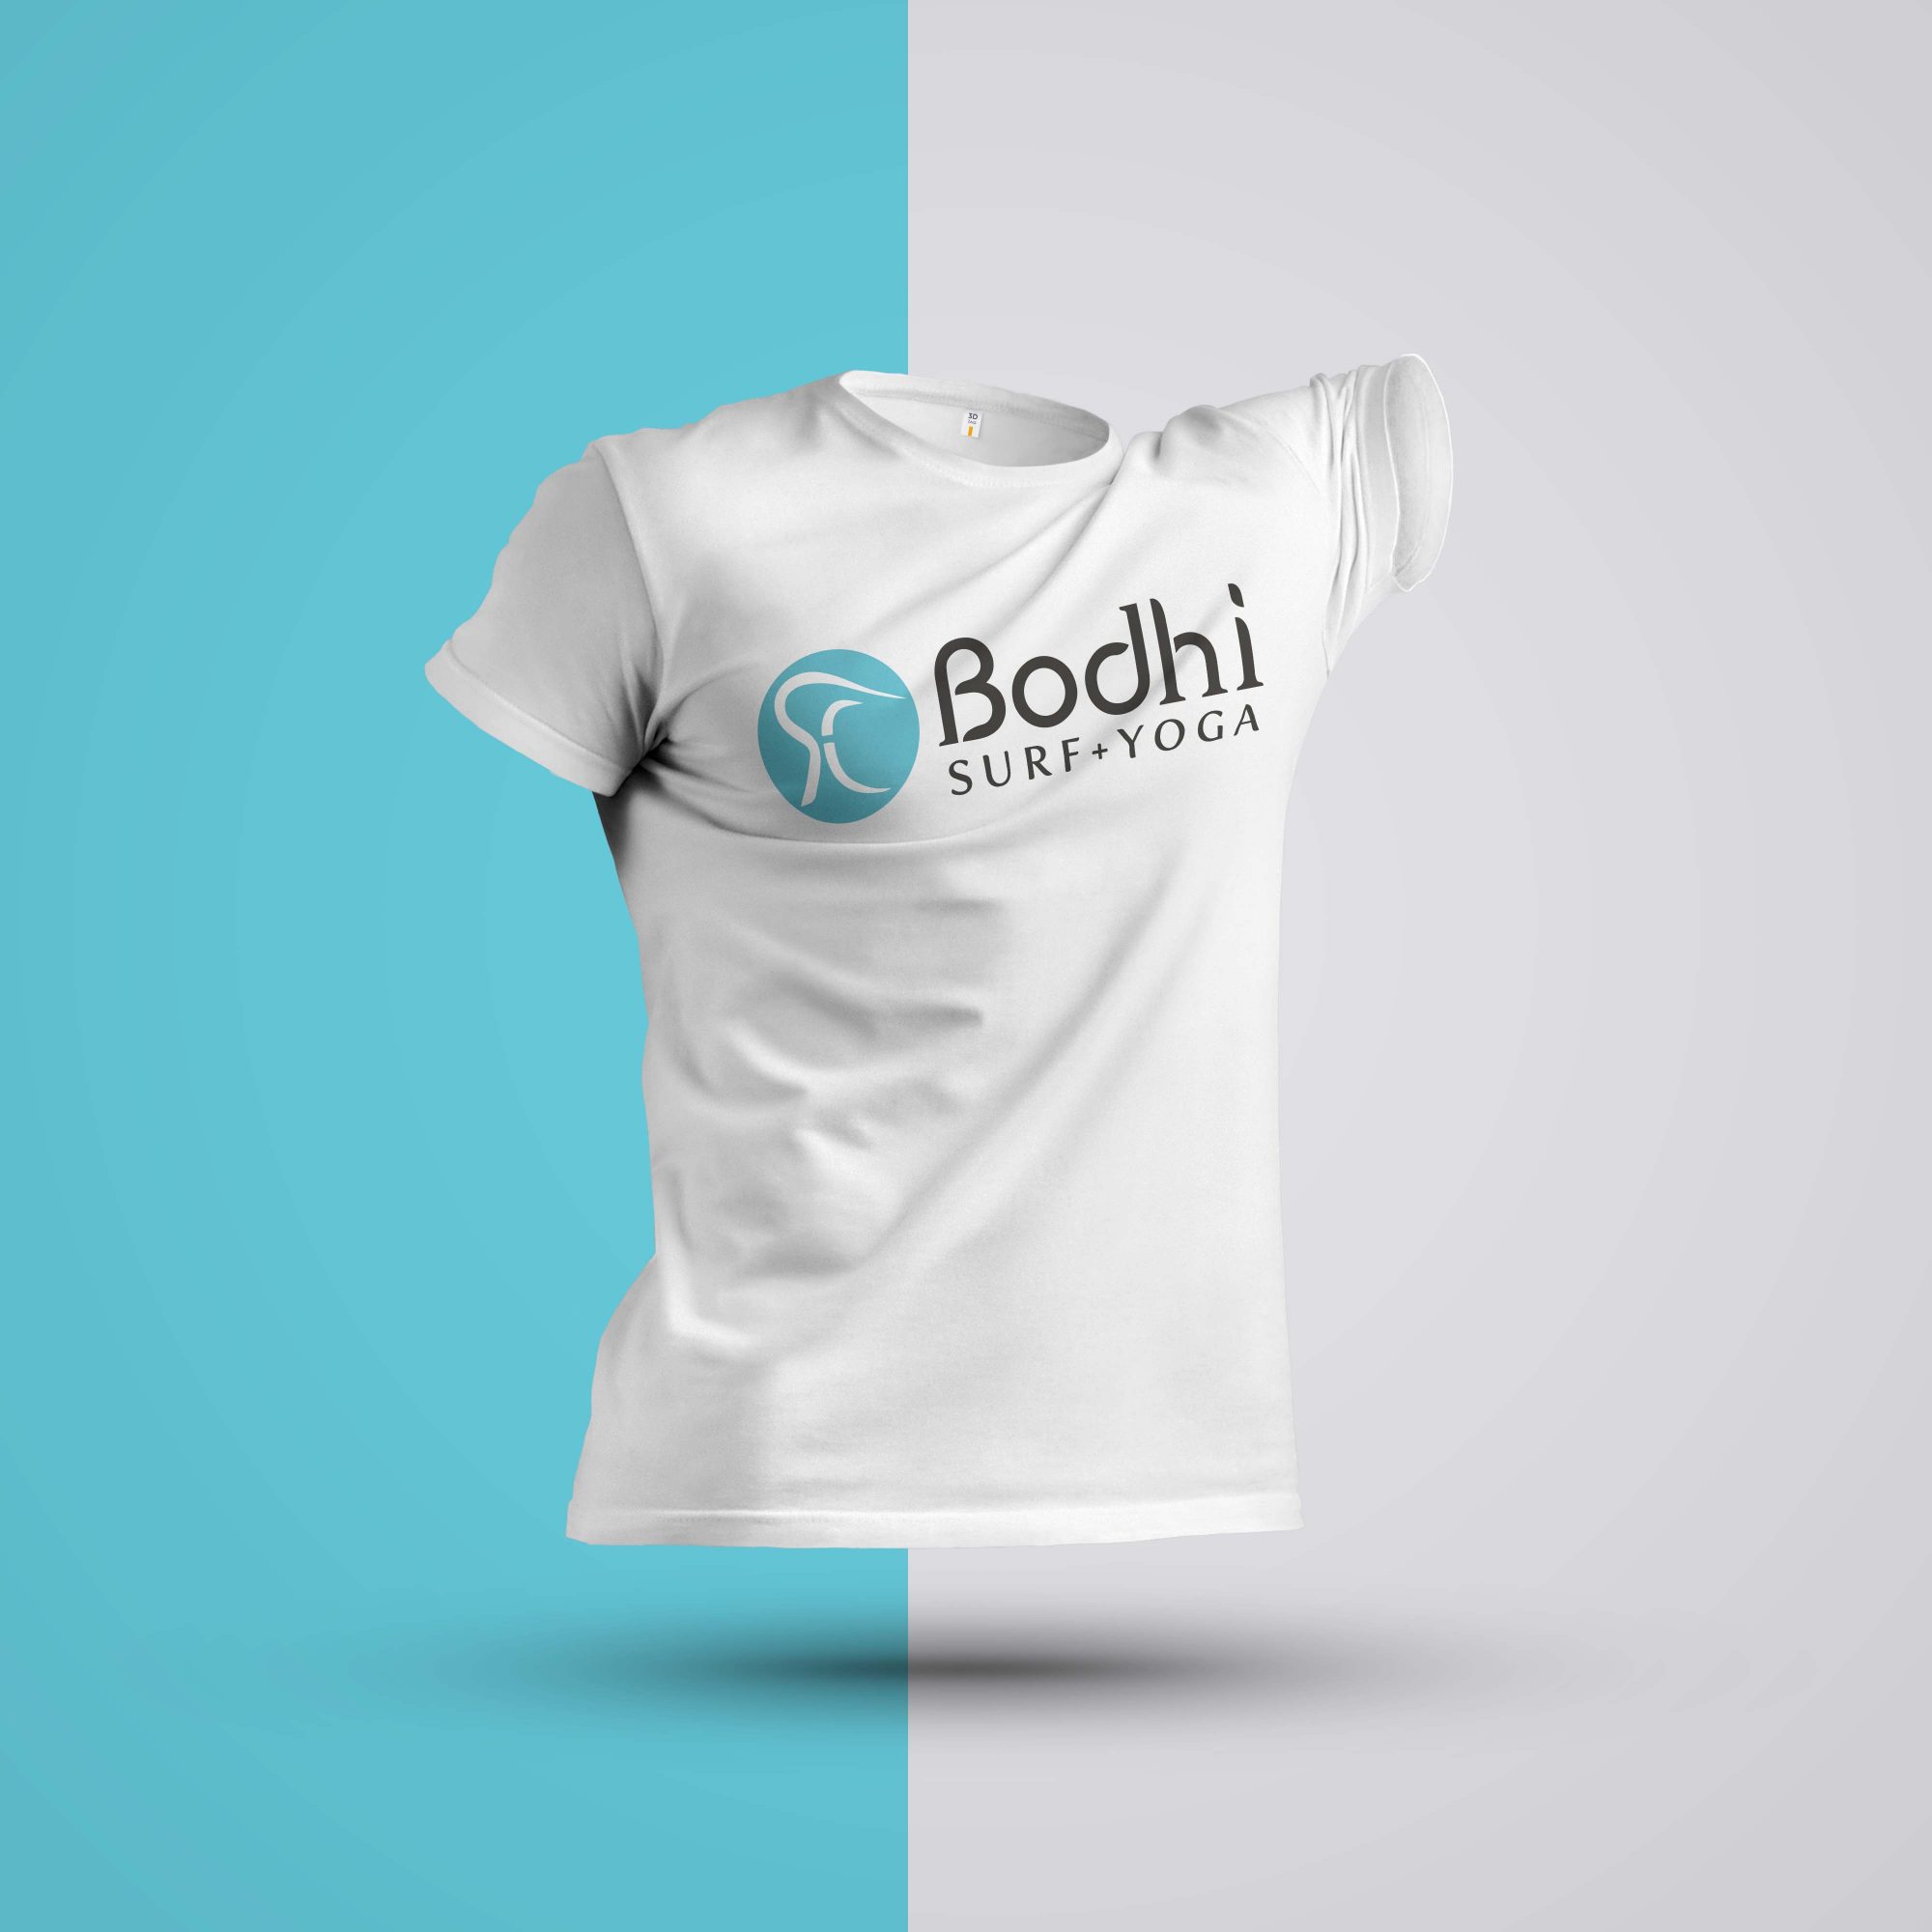 Bodhi Surf+Yoga Tshirt for Women